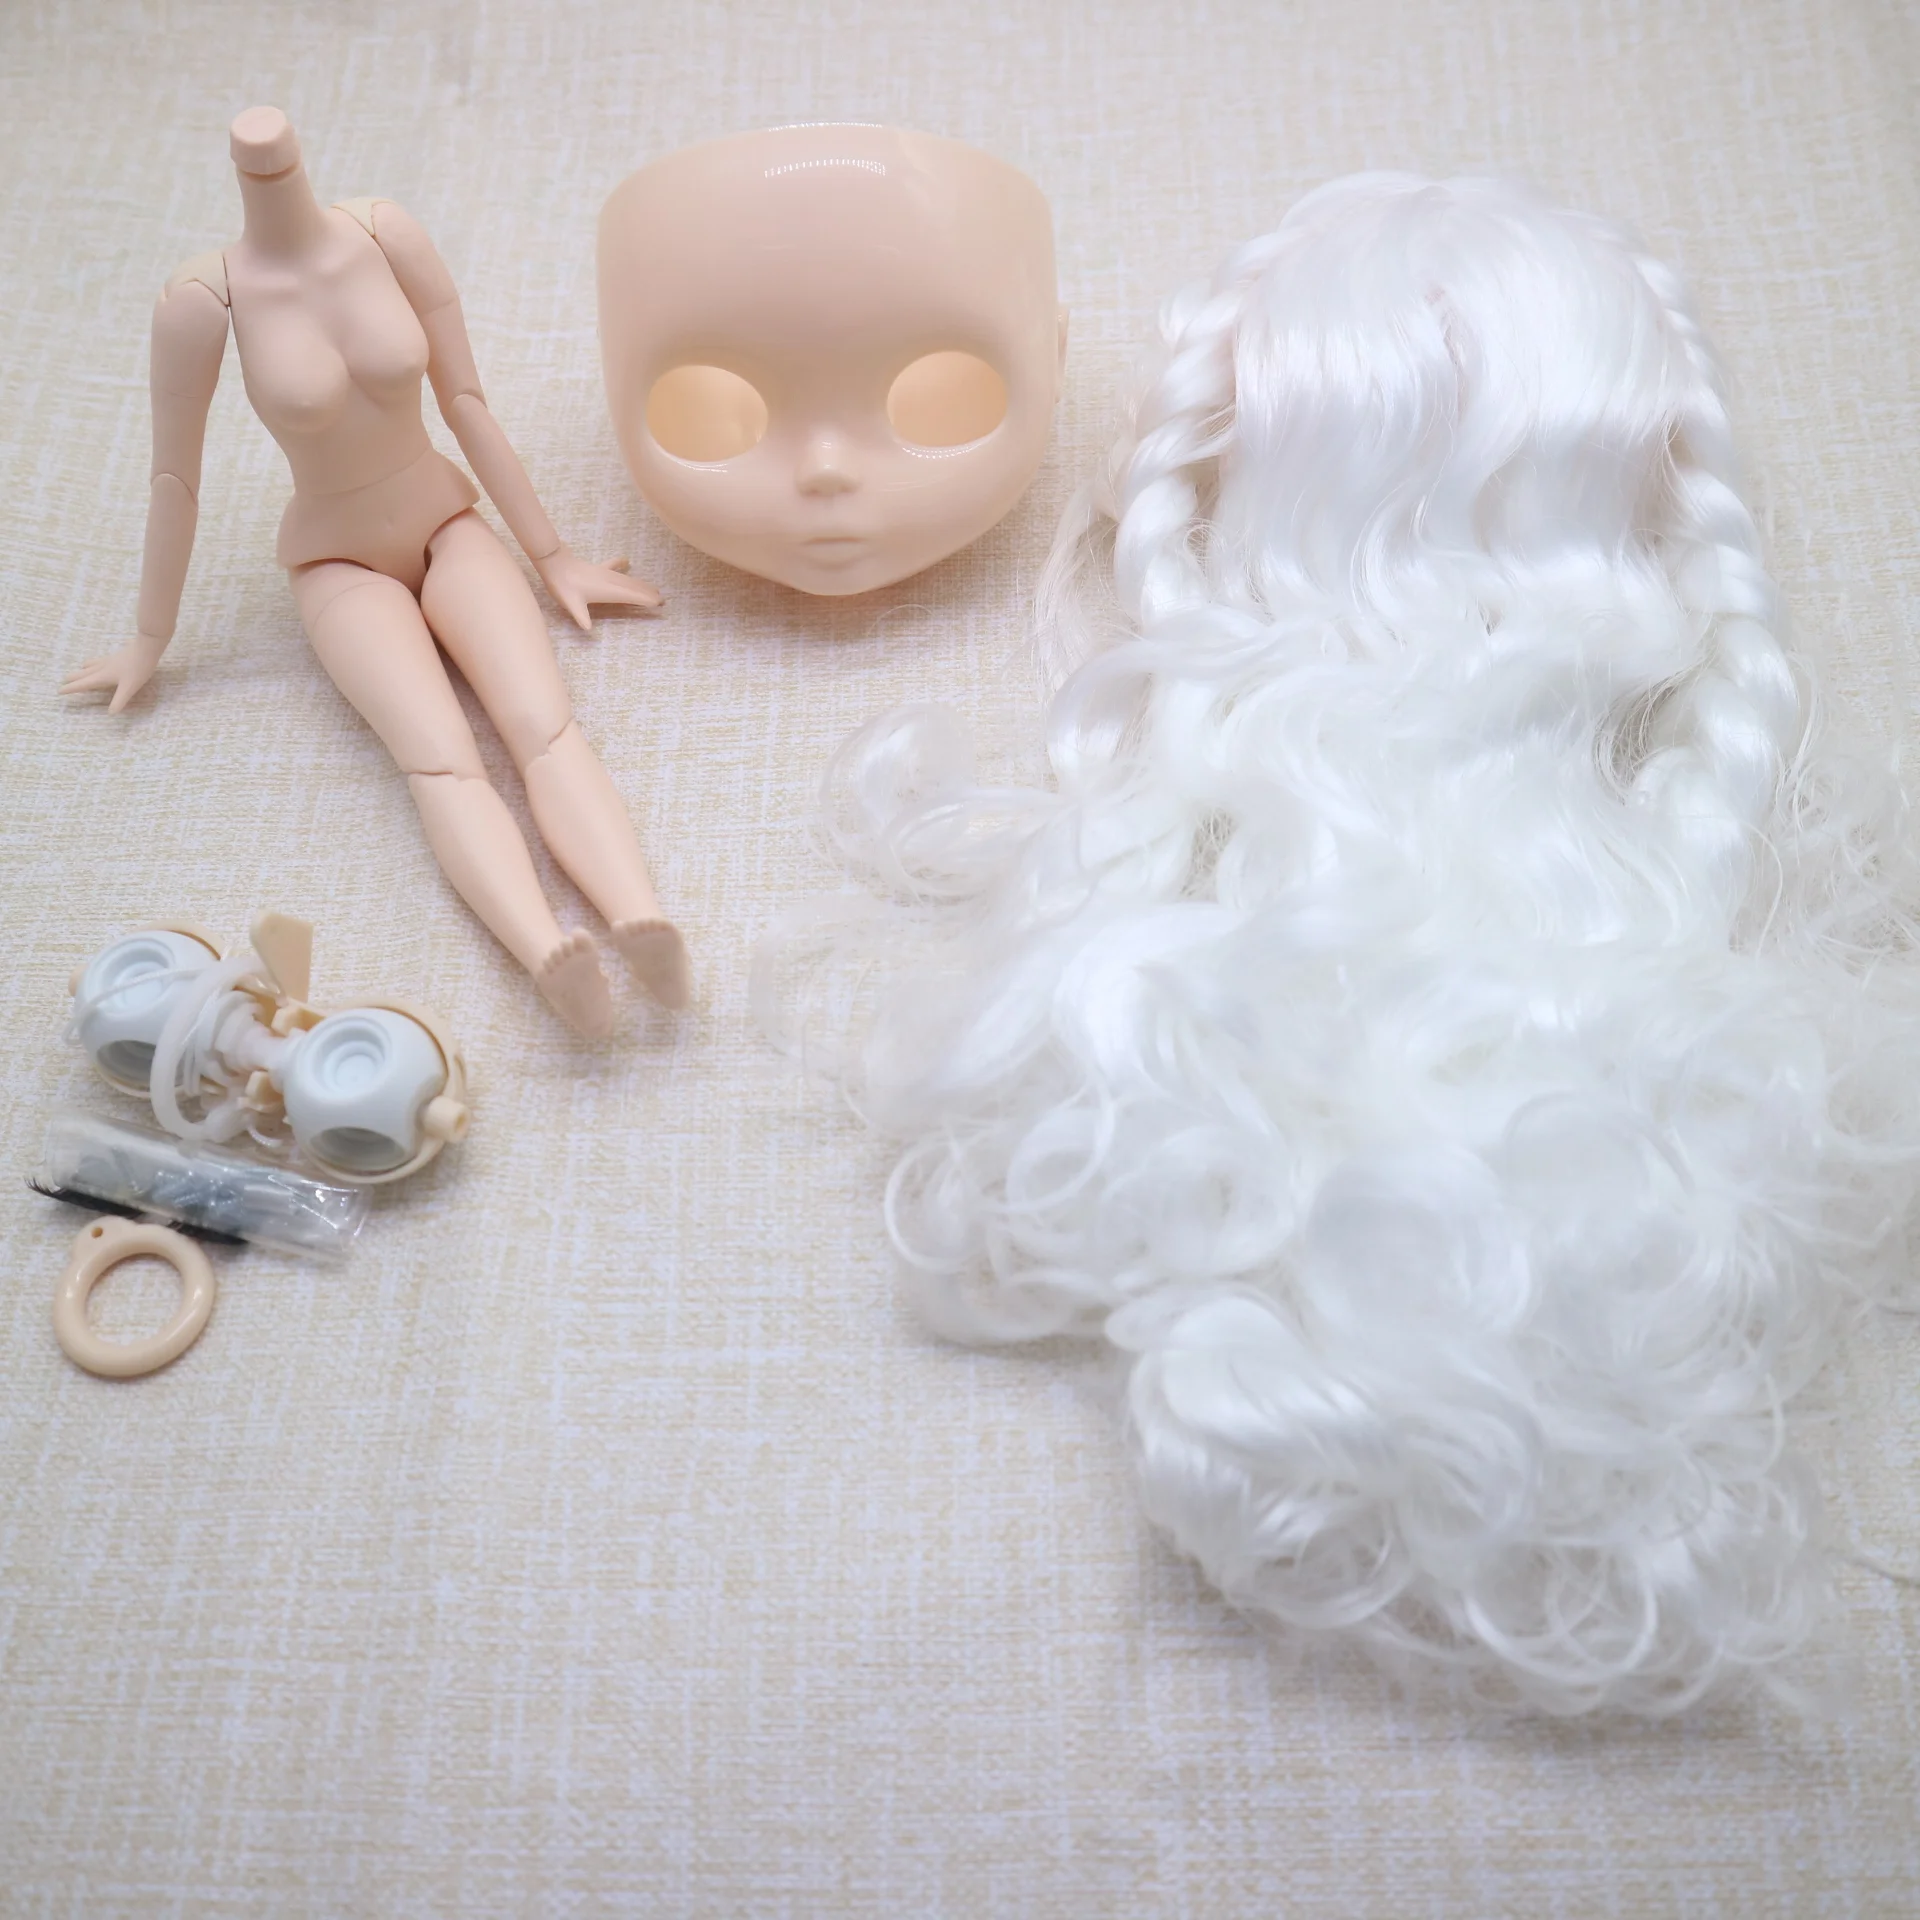 волосы на теле, кожа головы и глазной механизм для самостоятельного изготовления кукольных аксессуаров Nude blyth белые волосы